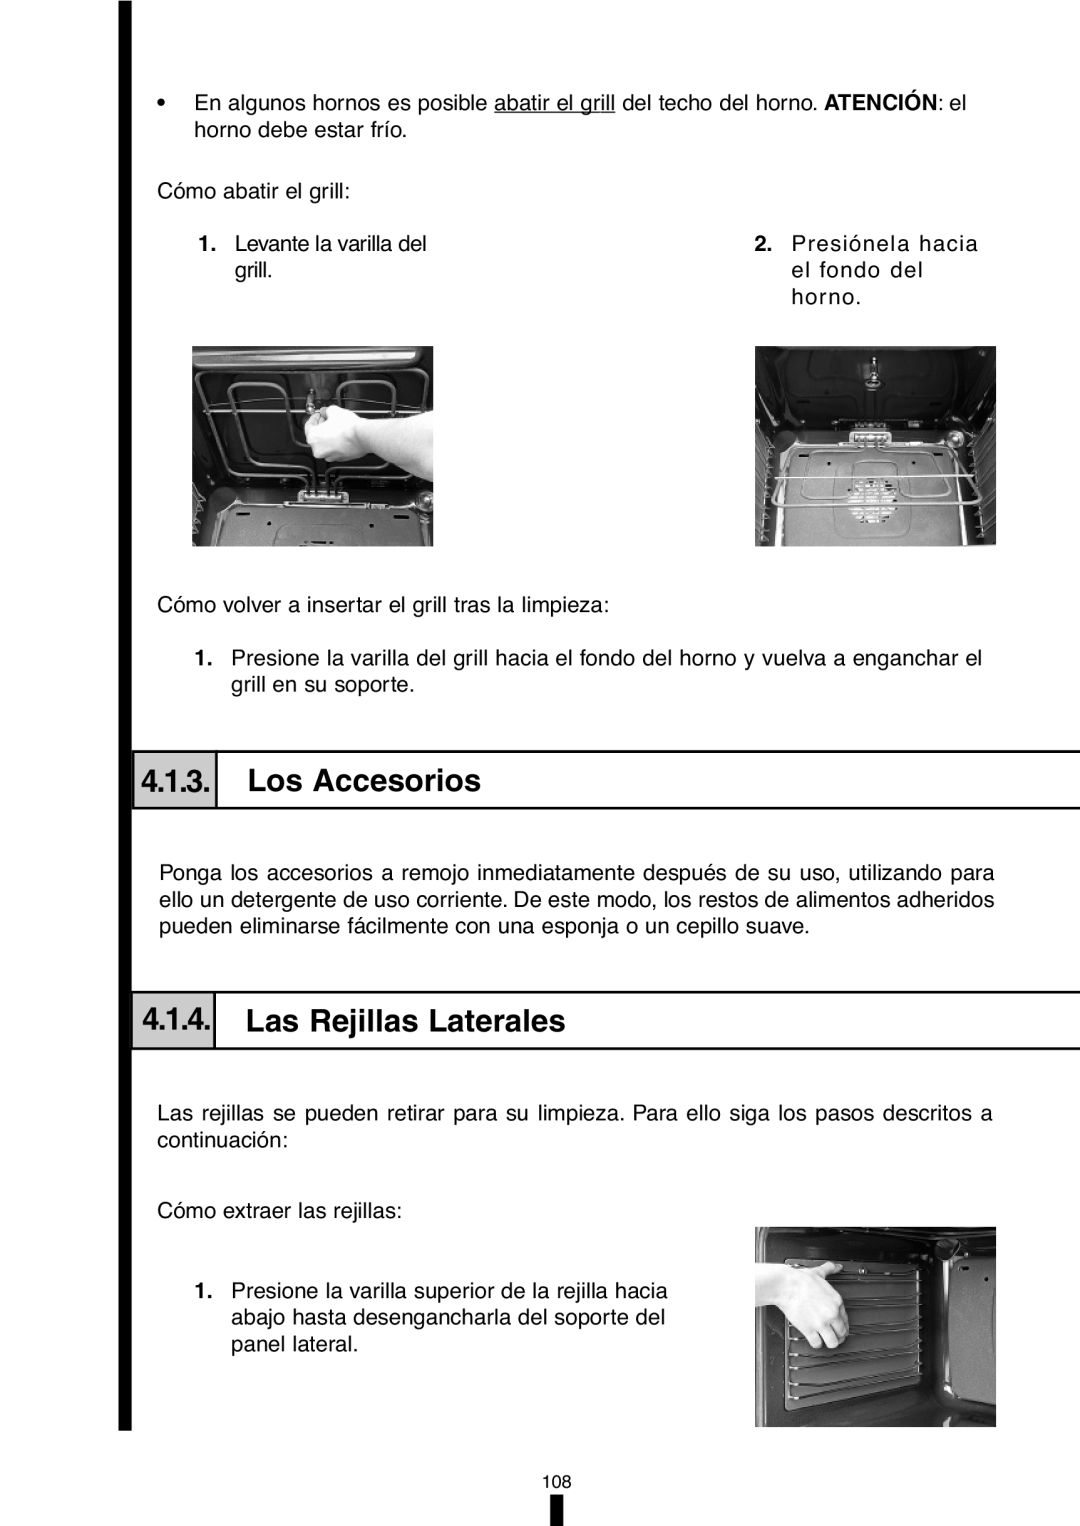 Fagor America 5HA-196X manual Los Accesorios, Las Rejillas Laterales, 4.1.3, 4.1.4 